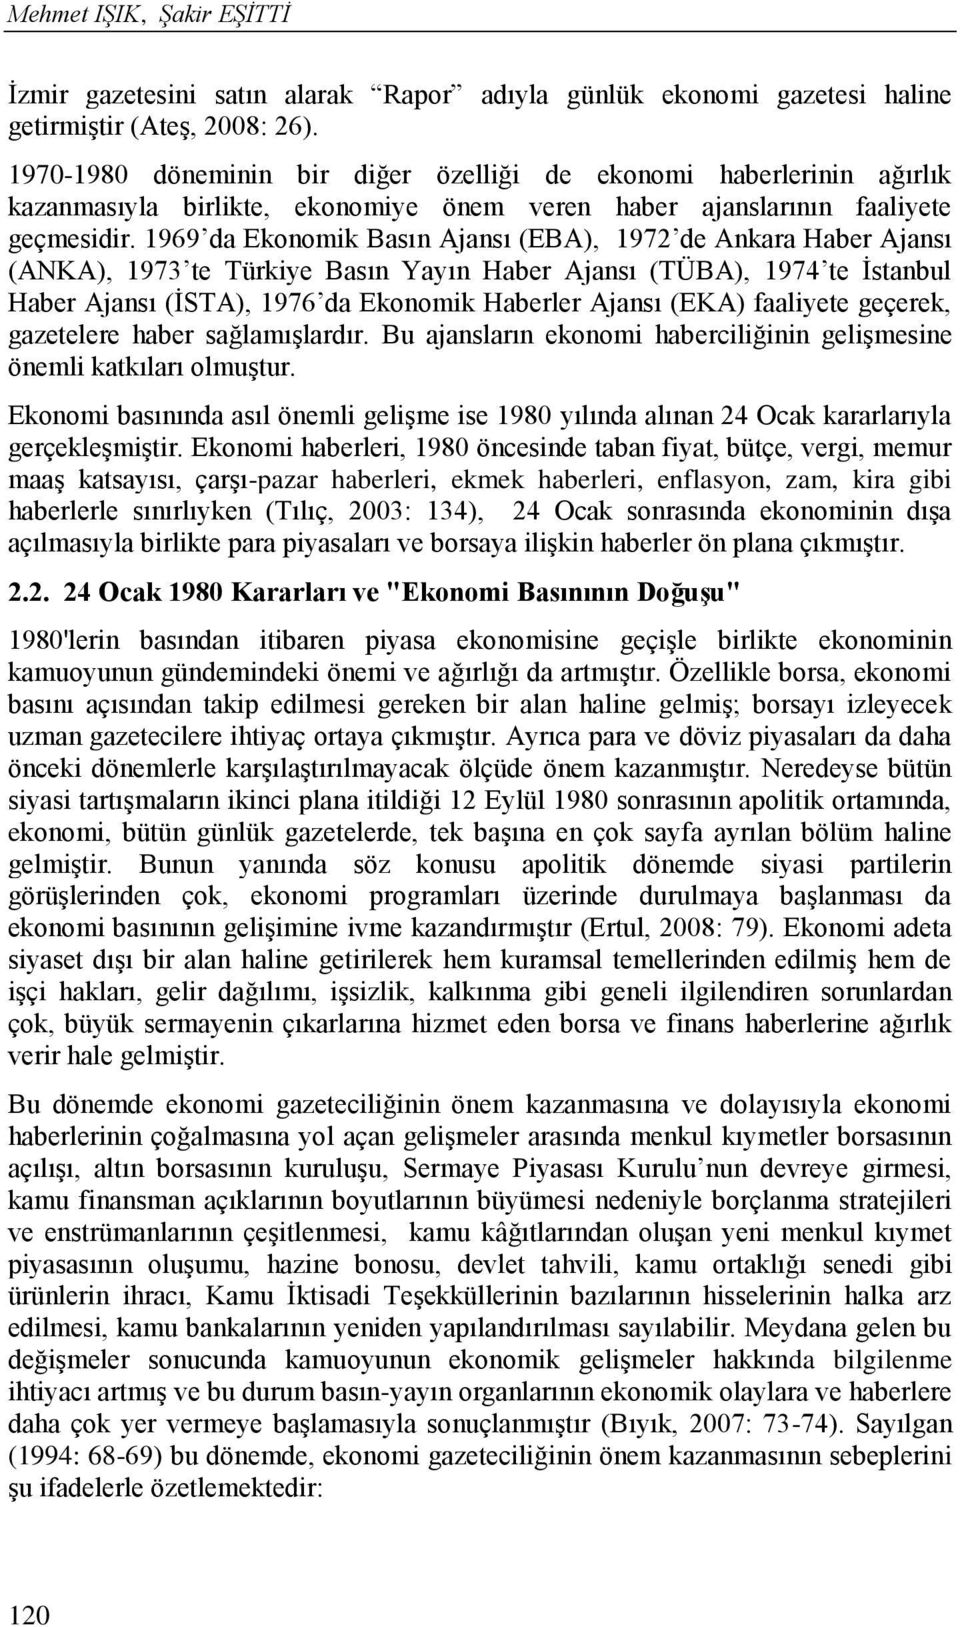 1969 da Ekonomik Basın Ajansı (EBA), 1972 de Ankara Haber Ajansı (ANKA), 1973 te Türkiye Basın Yayın Haber Ajansı (TÜBA), 1974 te İstanbul Haber Ajansı (İSTA), 1976 da Ekonomik Haberler Ajansı (EKA)